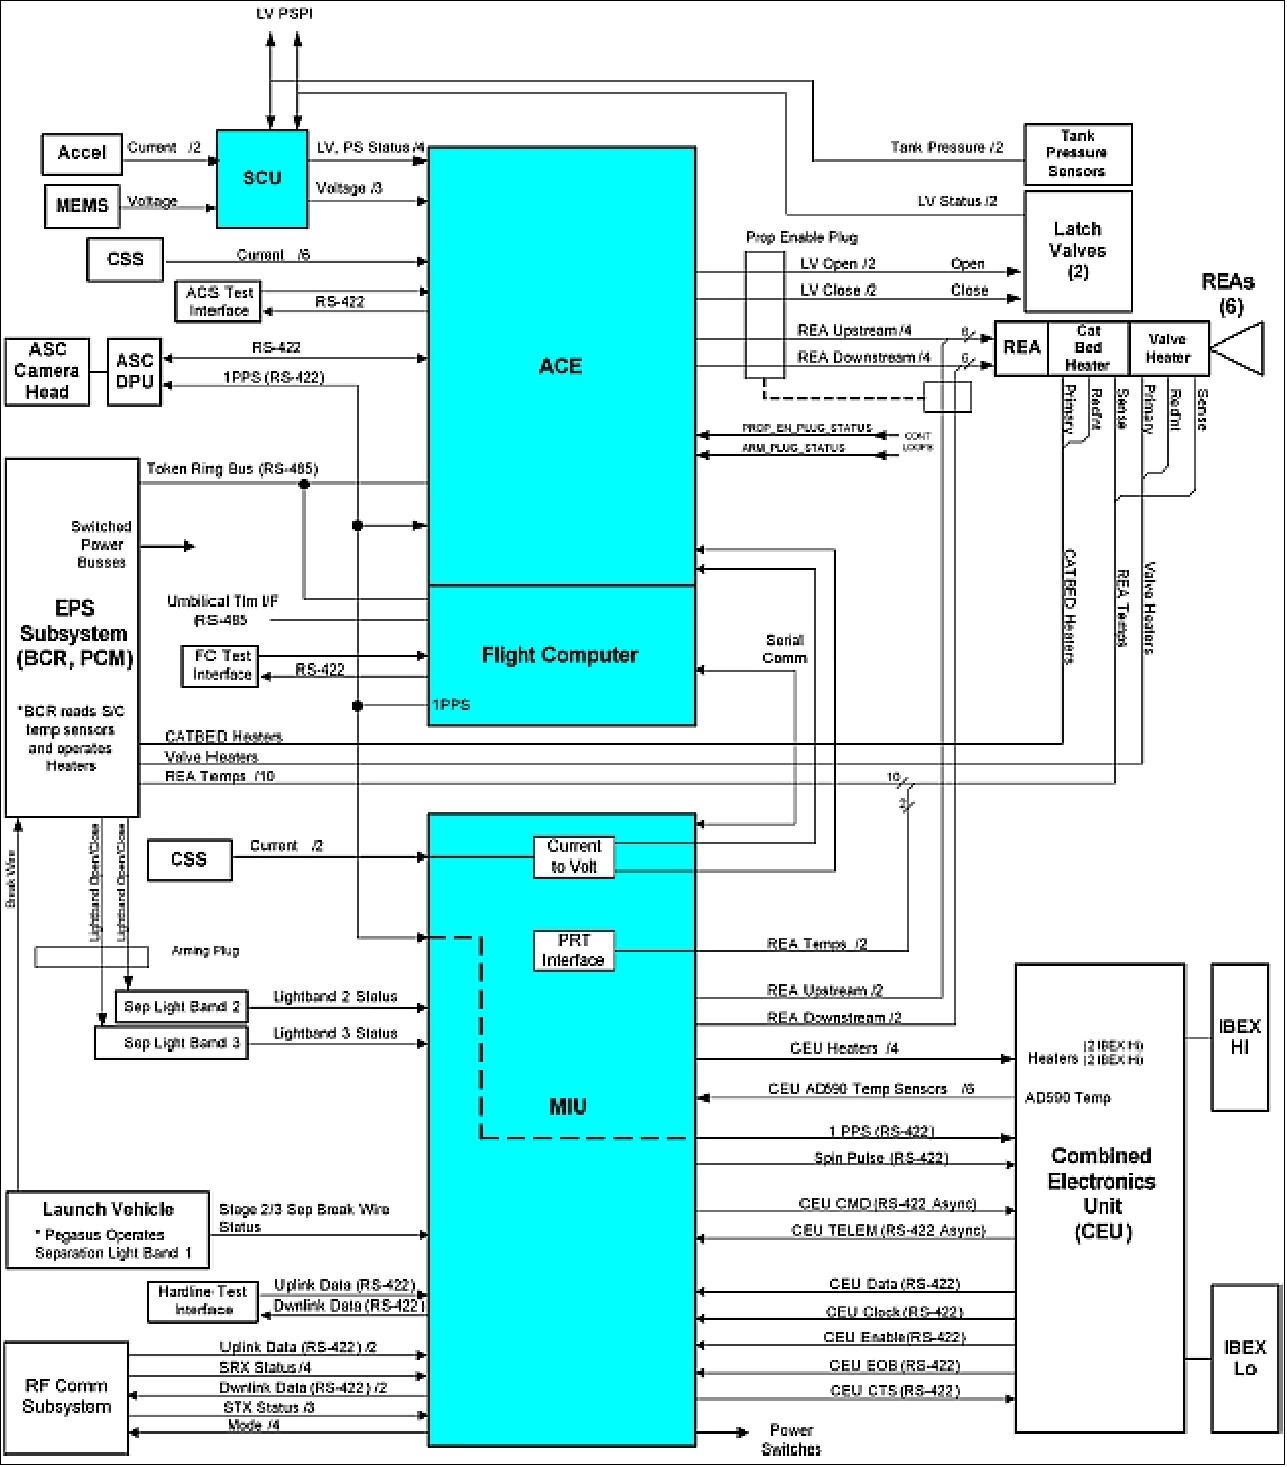 Figure 4: Block diagram of the C&DH subsystem (image credit: IBEX consortium, Ref. 5)